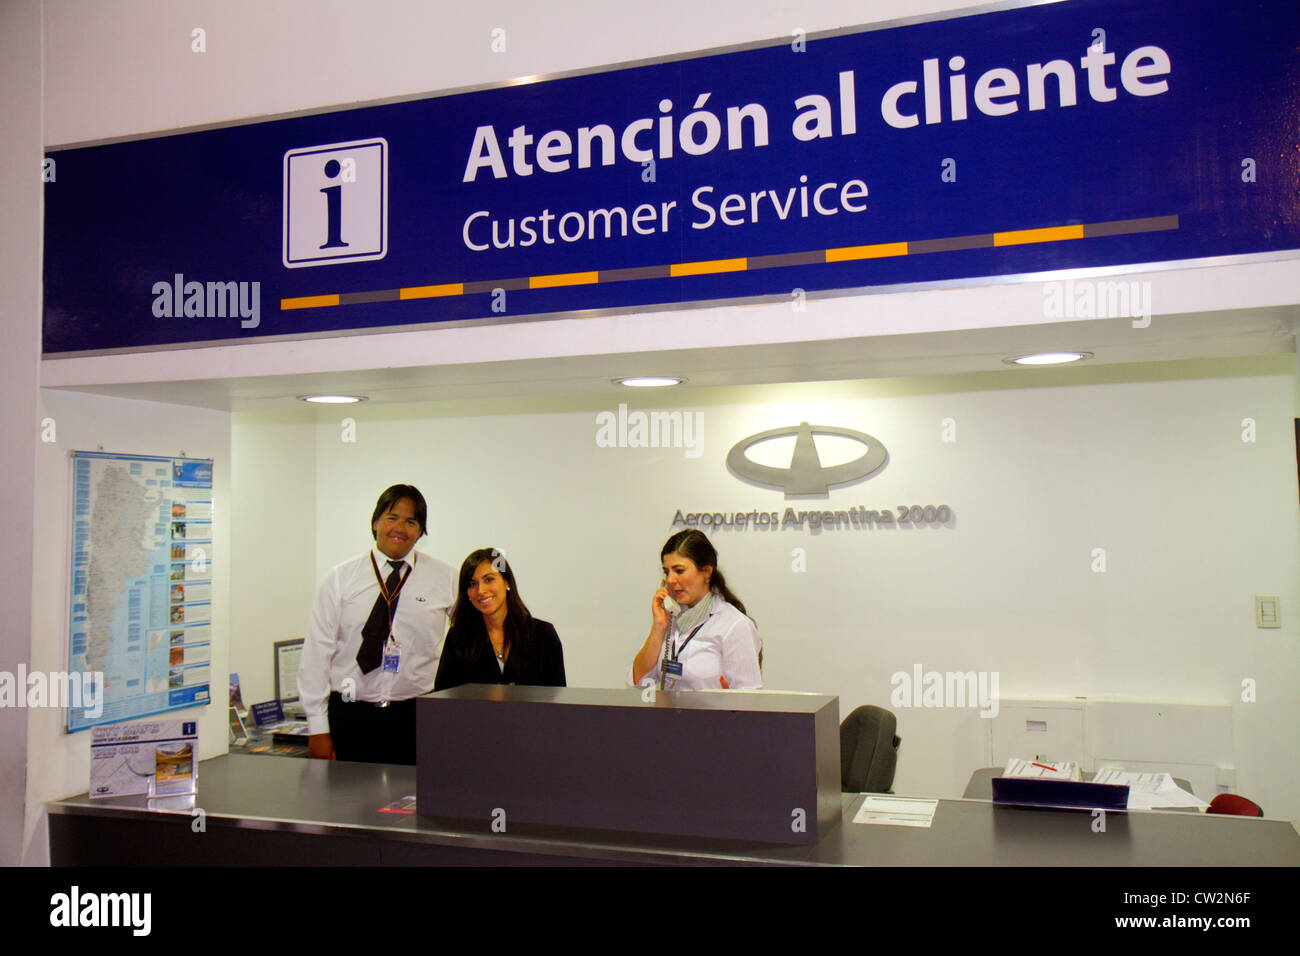 Mendoza Argentina,Aeropuerto Internacional Gobernador Francisco Gabrielli y El Plumerillo,MDZ,International Airport,terminal,customer service,desk,His Stock Photo